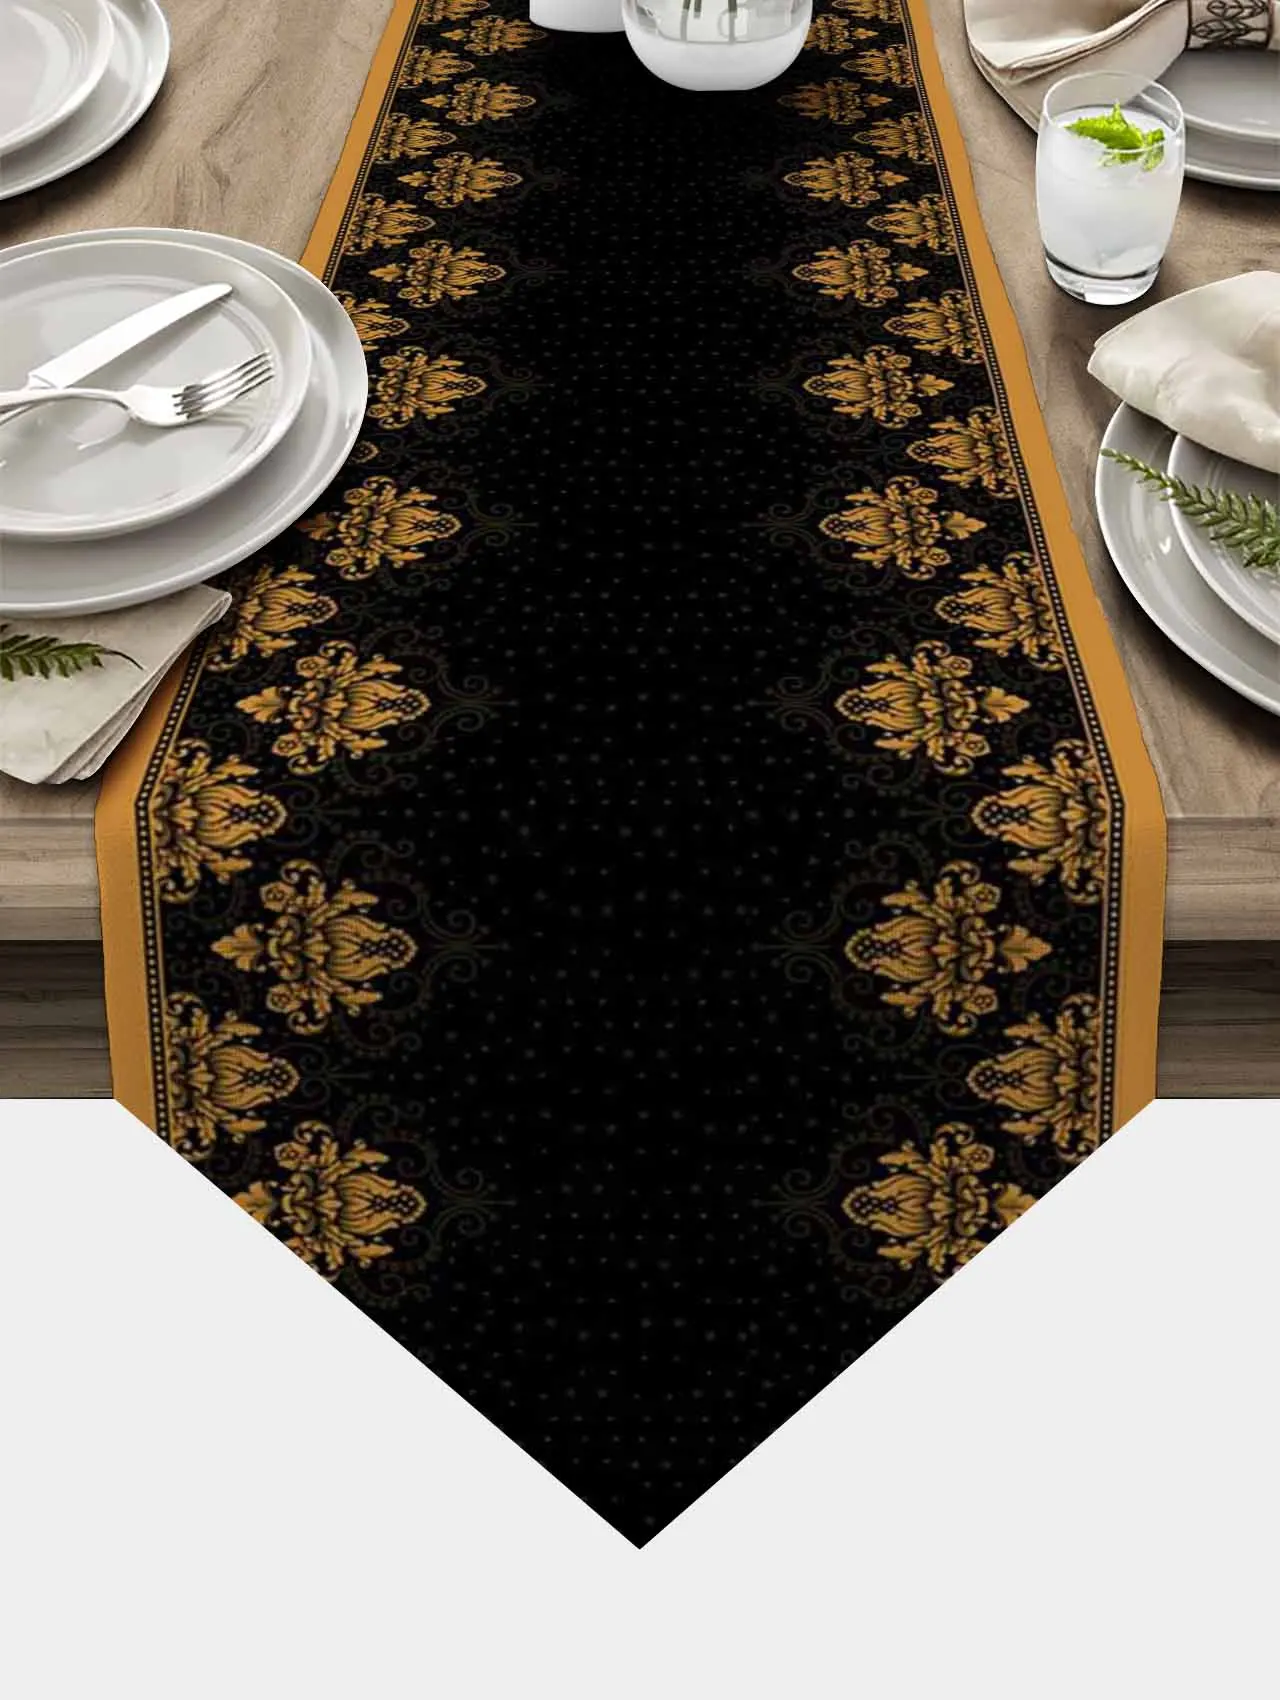 Runner da tavolo Soild Runner da tavolo in stile decorativo nordico Runner da tavolo con motivo floreale per matrimonio in tovaglia per la cena della casa dell'hotel